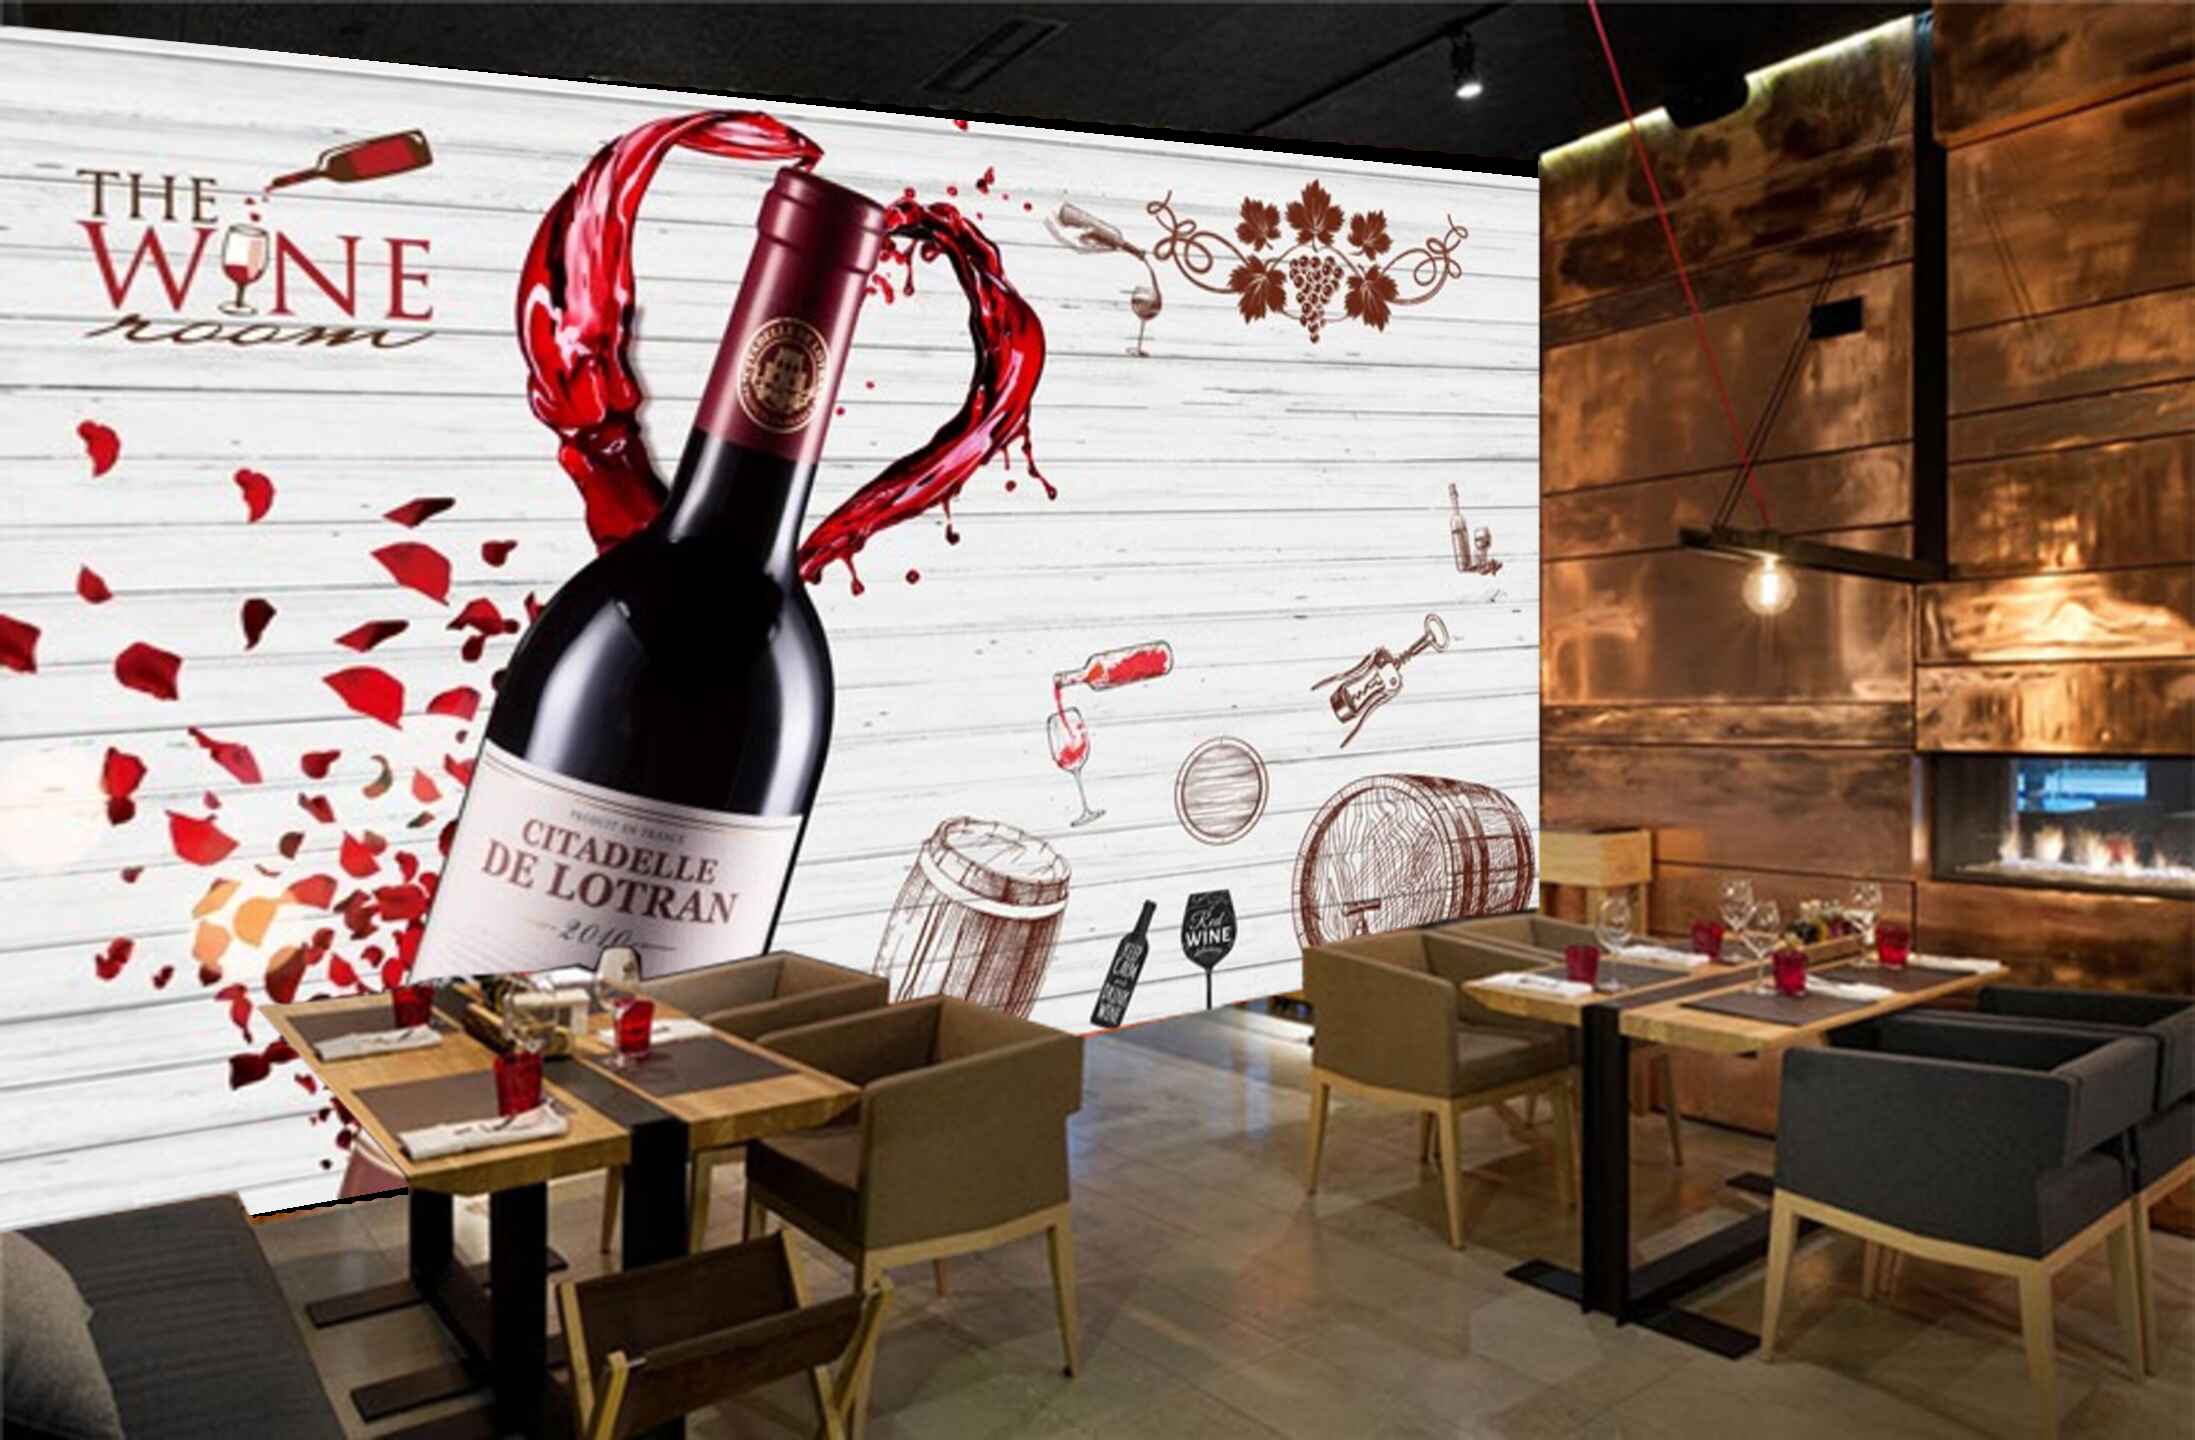 Avikalp MWZ3105 Wine Bottle Glasses HD Wallpaper for Cafe Restaurant